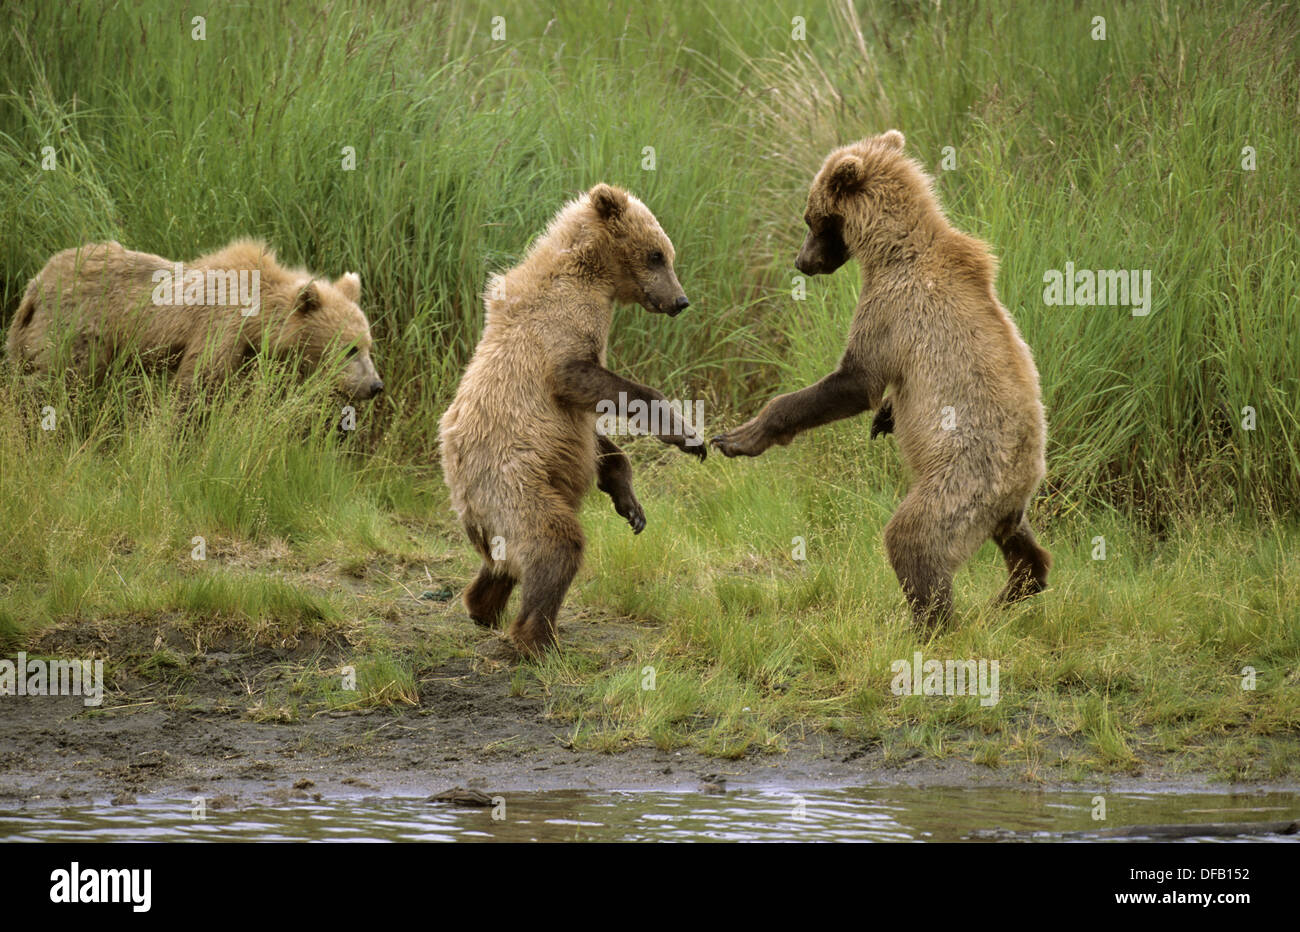 Песня танцующие медведи. Медведь танцует. Бурый медведь танцует. Танцующий мишка. Парк танцующих медведей.